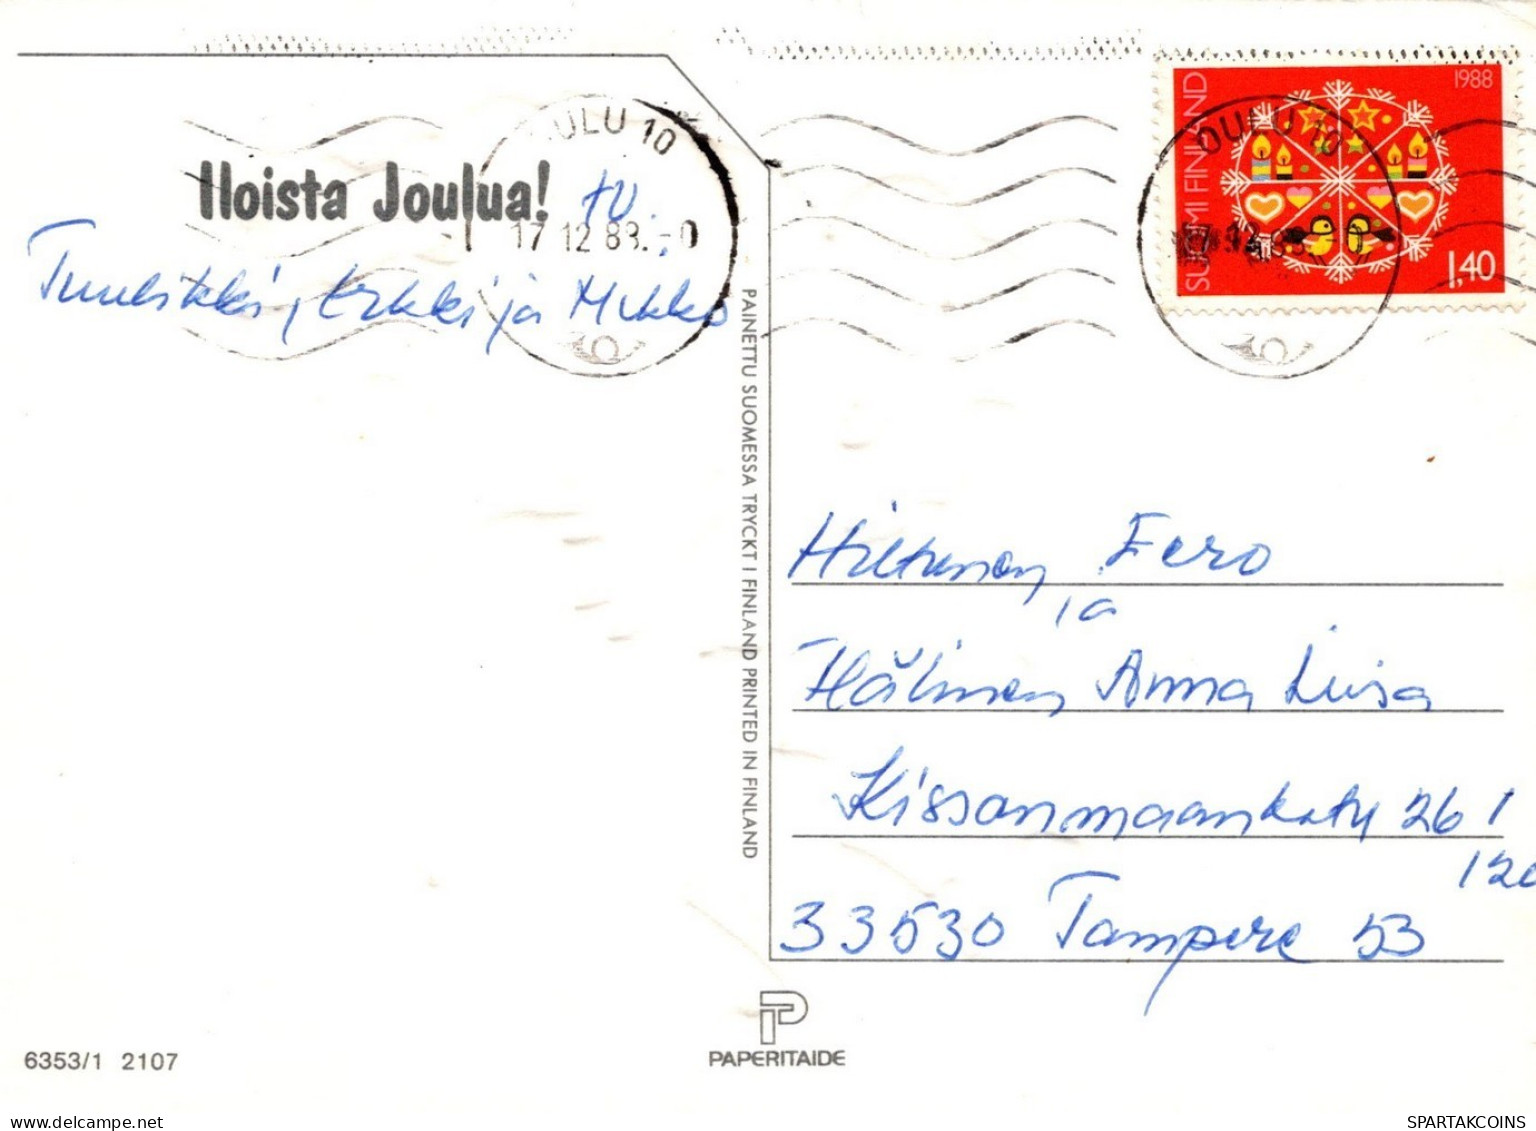 WEIHNACHTSMANN SANTA CLAUS WEIHNACHTSFERIEN Vintage Postkarte CPSM #PAJ531.A - Santa Claus